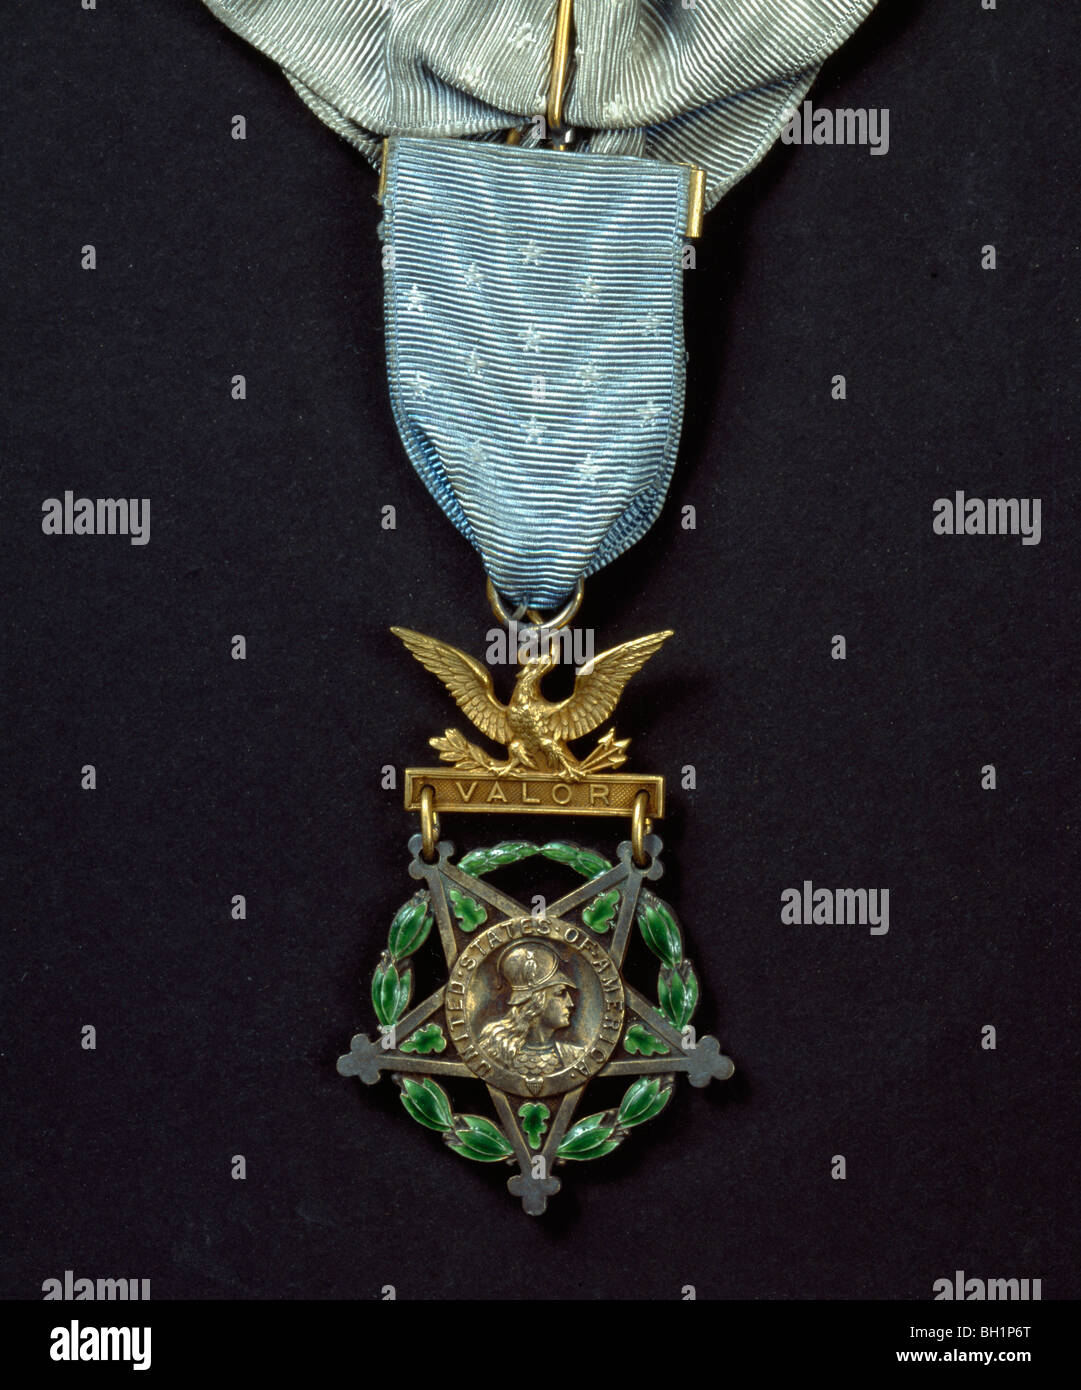 Westminster Abbey: Congressional Medal Of Honor eingeschrieben "VALOR" verliehen durch die US-Regierung auf den unbekannten Krieger im Jahr 1921. Stockfoto